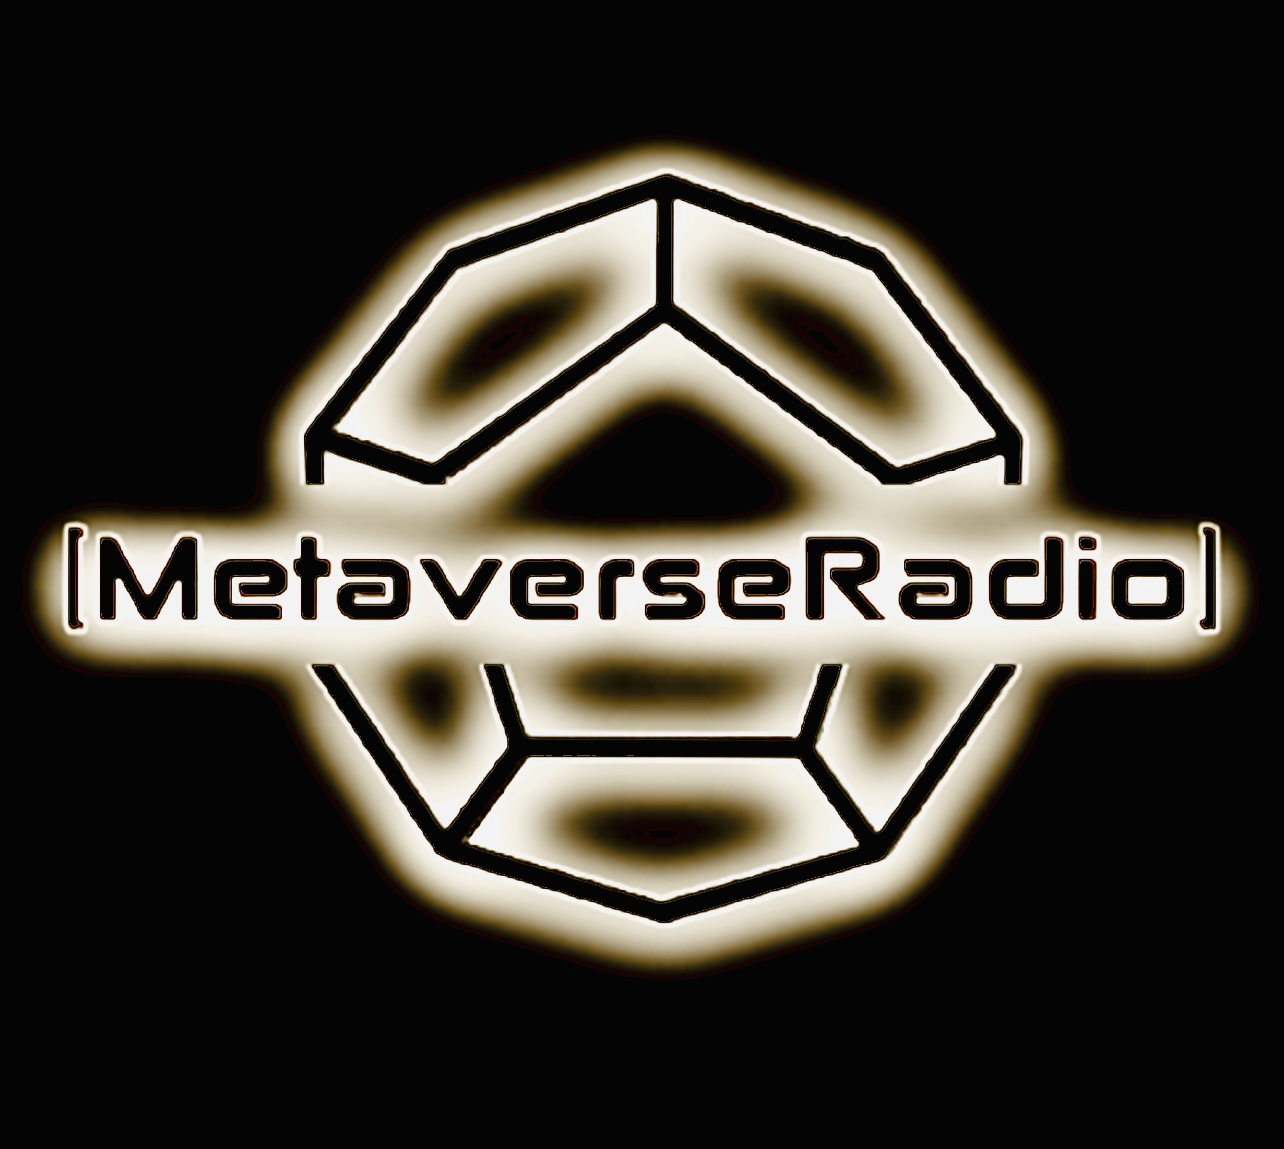 Metaverse Radio LLC